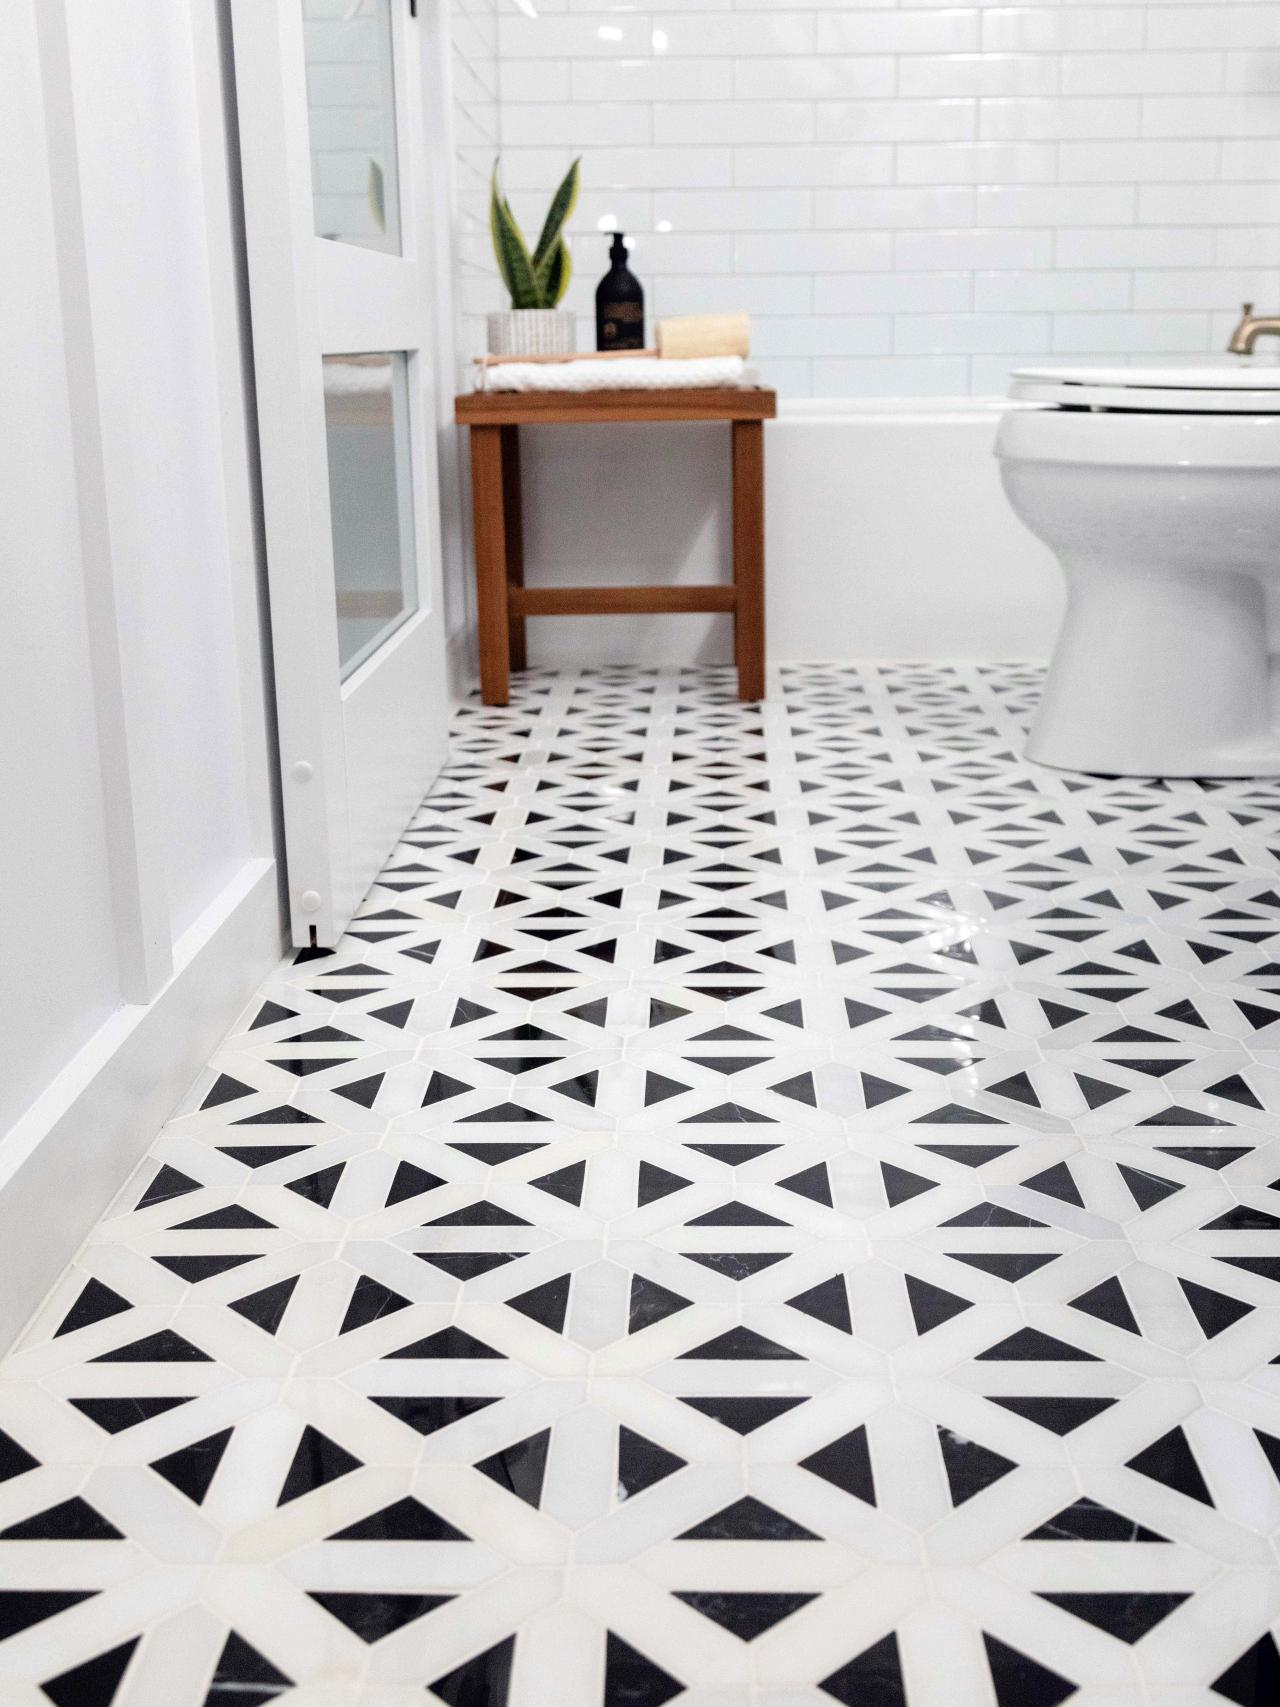 How To Lay A Tile Floor, Tiling A Bathroom Floor Around A Toilet